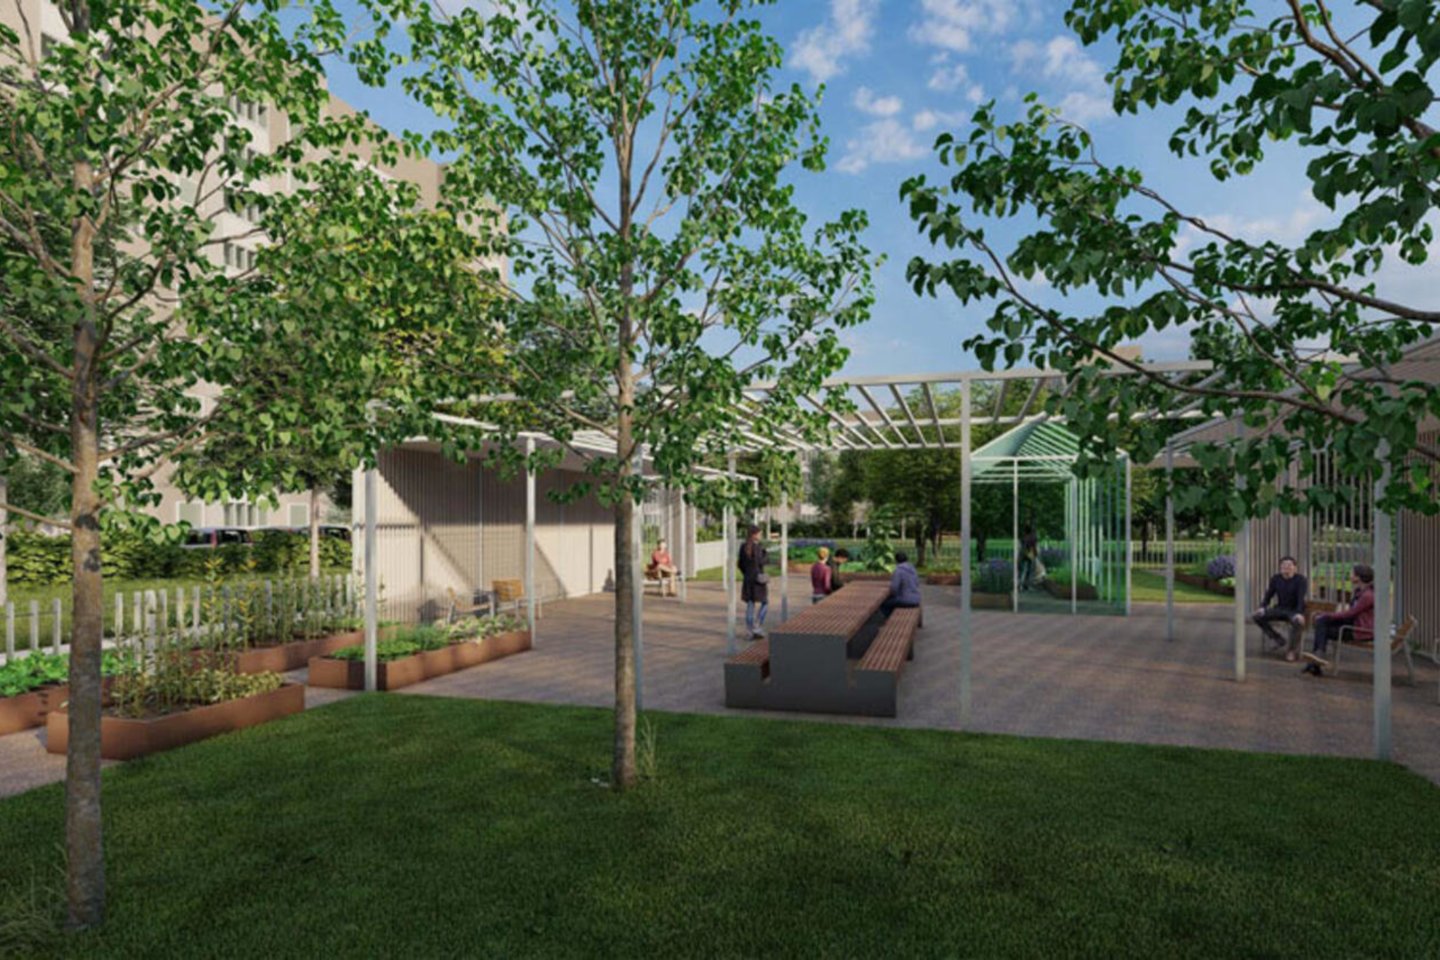 Siūloma įkurti bendruomenės sodą su vaismedžiais ir šiltnamiu.<br>Projektuotojų vizual.